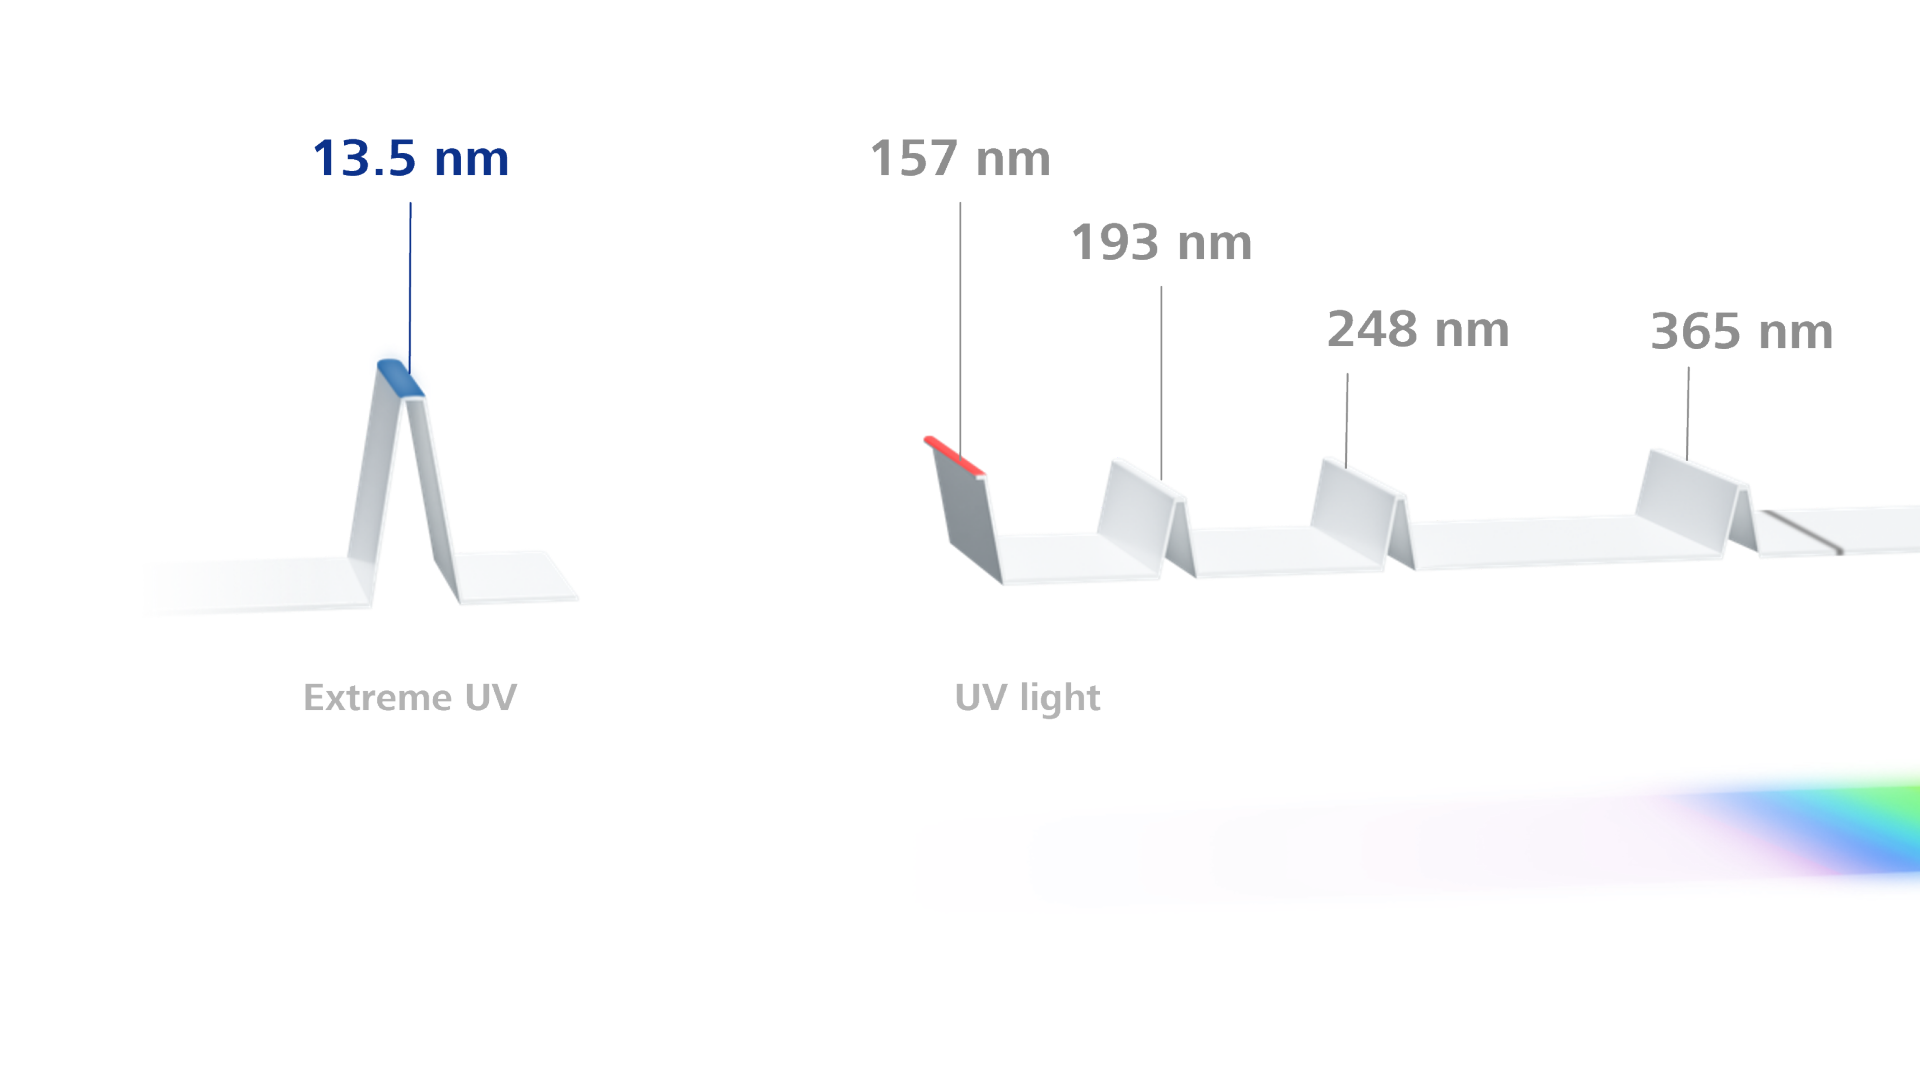 Light spectrum of wavelengths for visible light in different range